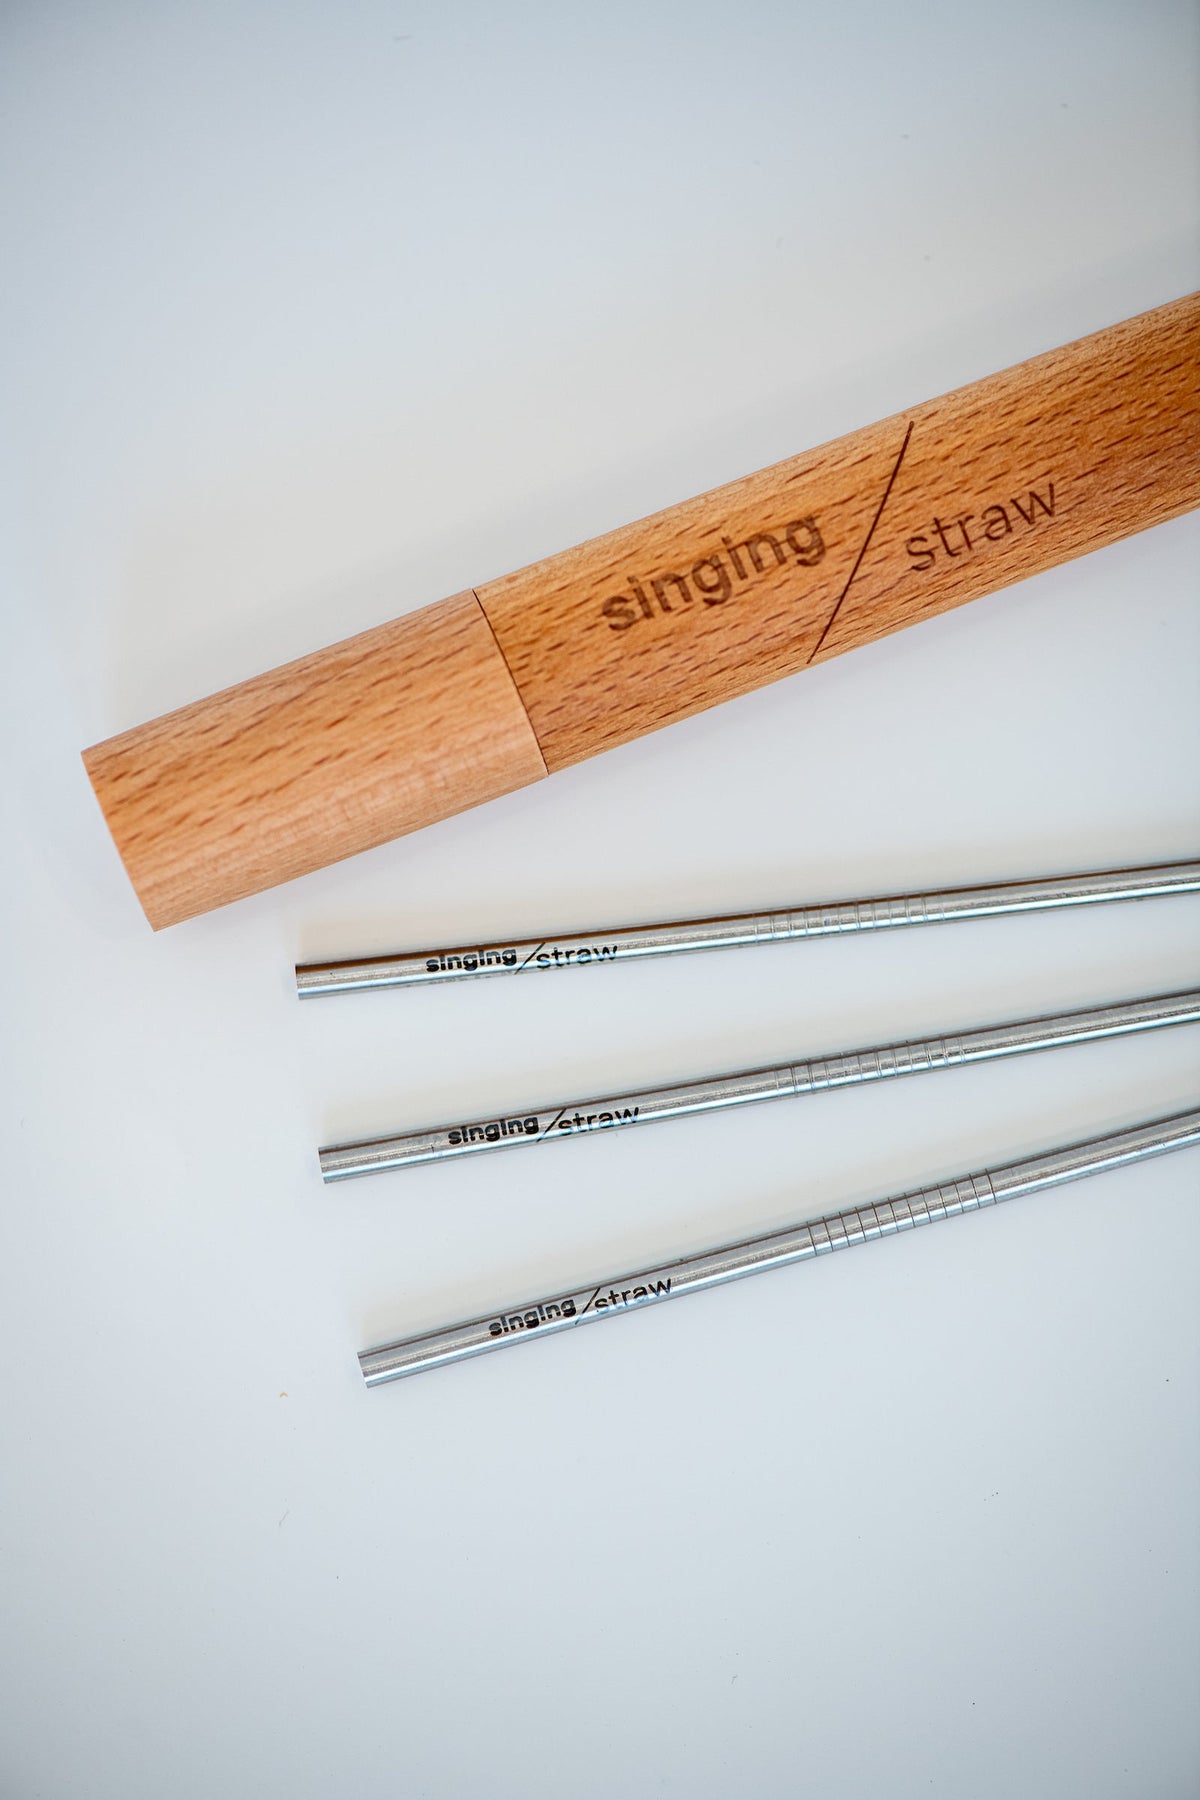 Vocal Straws - SOVT Straw - Singing Straw